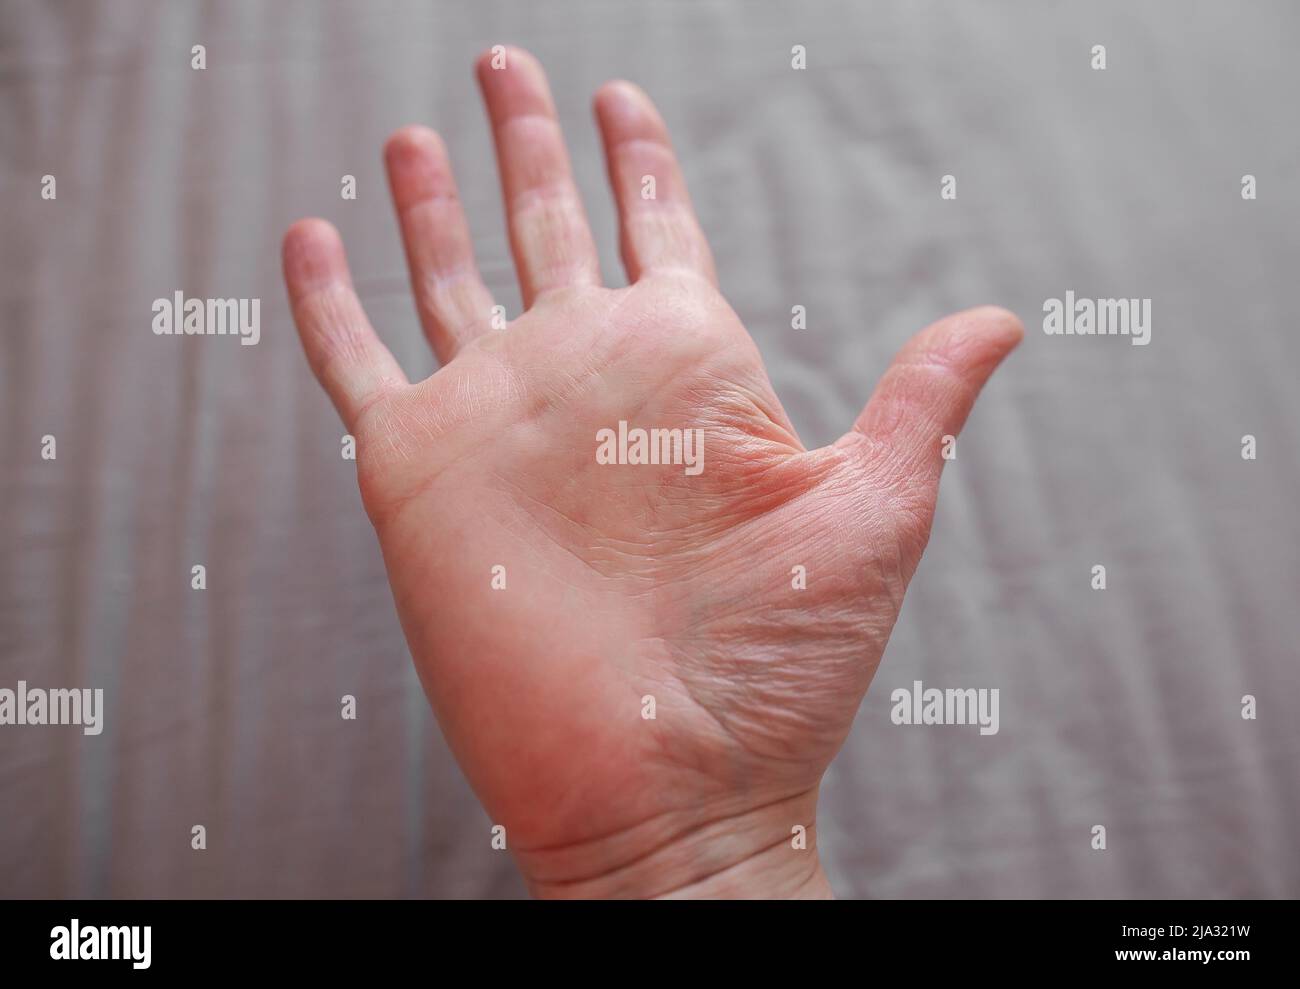 Hand einer Person mit Ehlers-Danlos-Syndrom, mit trockener, dehnbarer, altaussehender Haut, EDS-verknitterter Haut Stockfoto